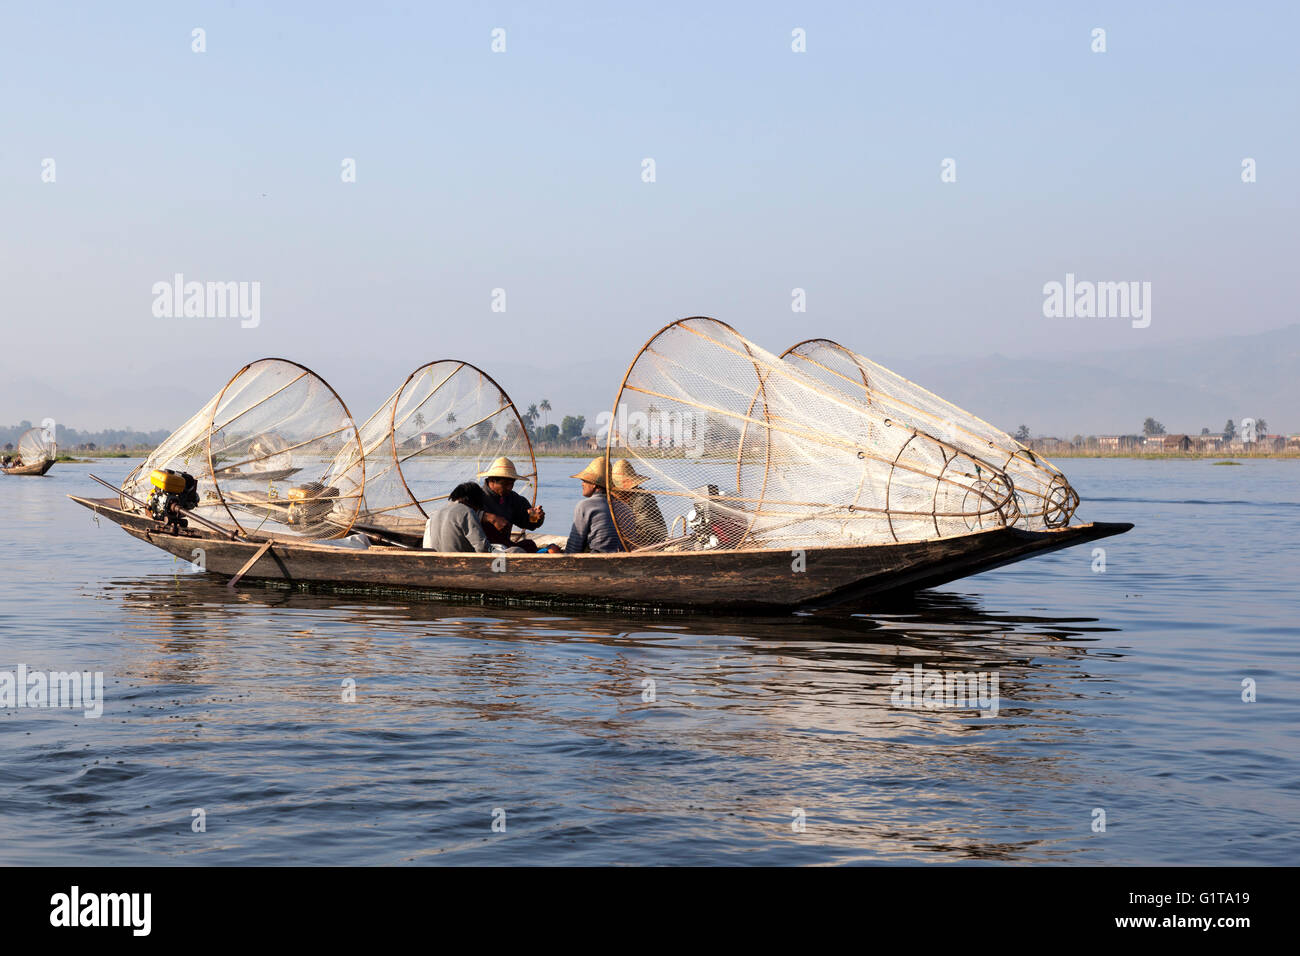 Sul Lago Inle, motorizzato due piroghe ancorate a fianco a fianco con i pescatori in appoggio un po' (Myanmar). Foto Stock